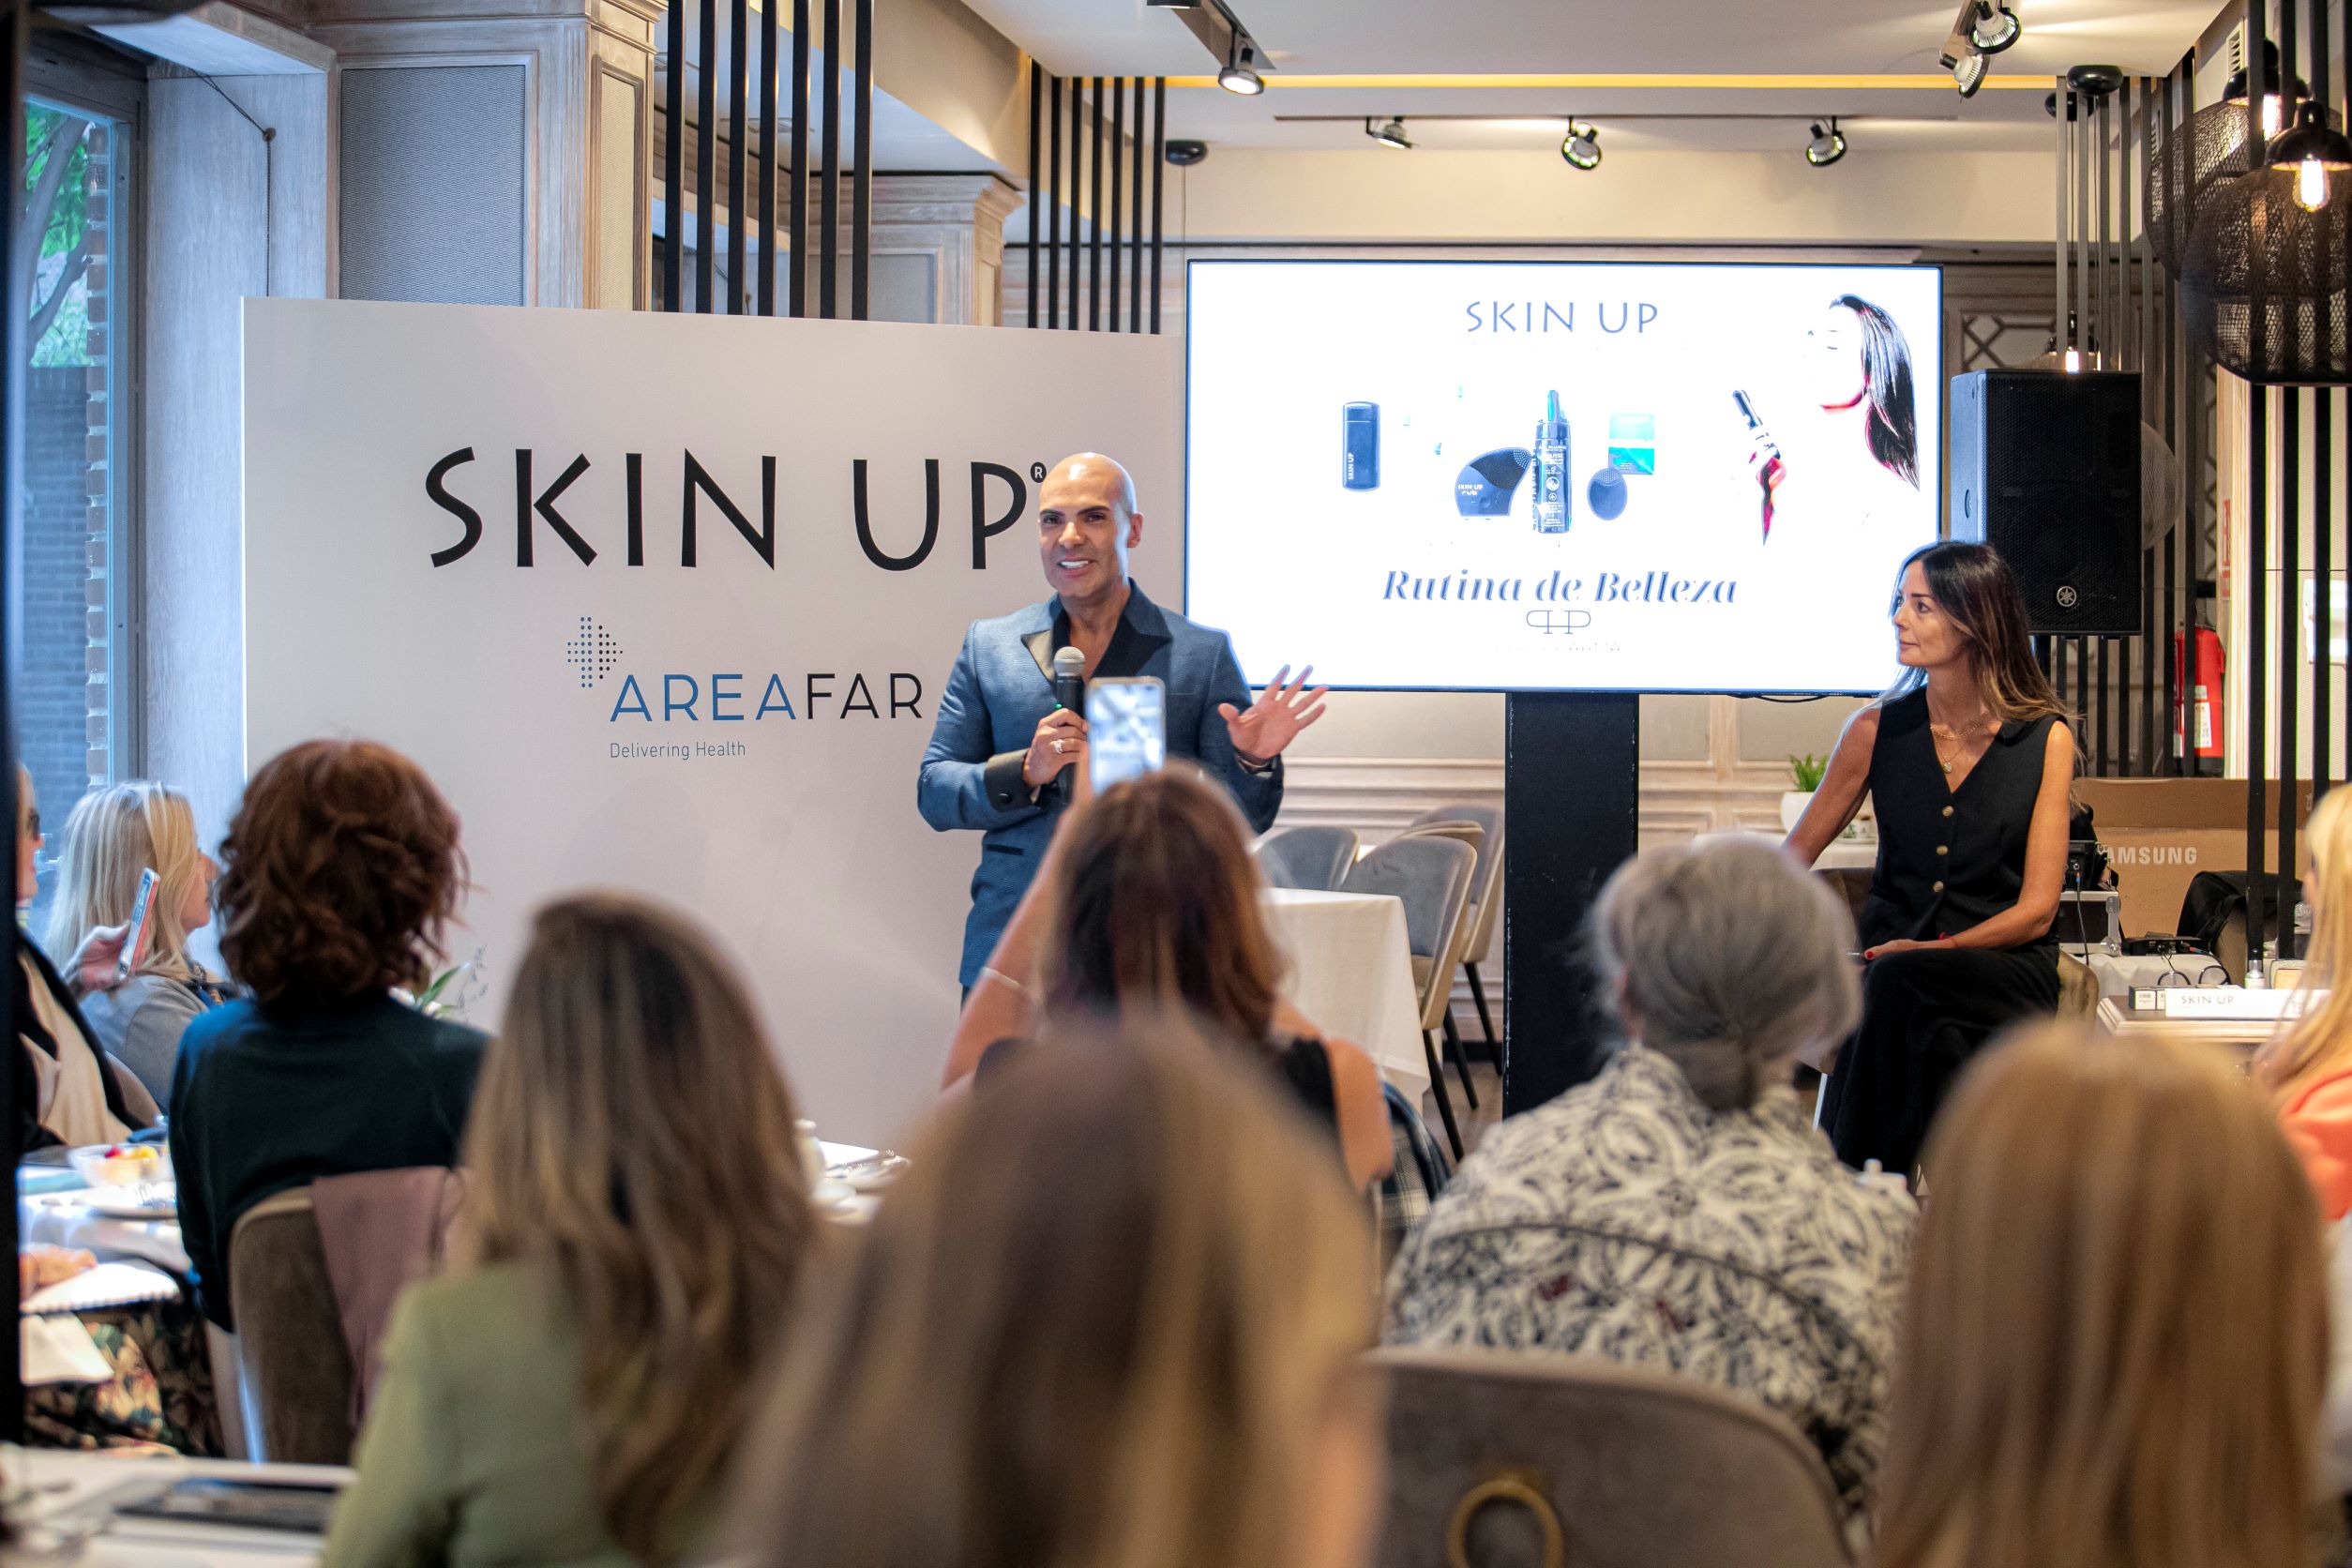 Areafar organiza evento para Laboratorios Phil Pharma donde presenta su línea de productos Skin up.